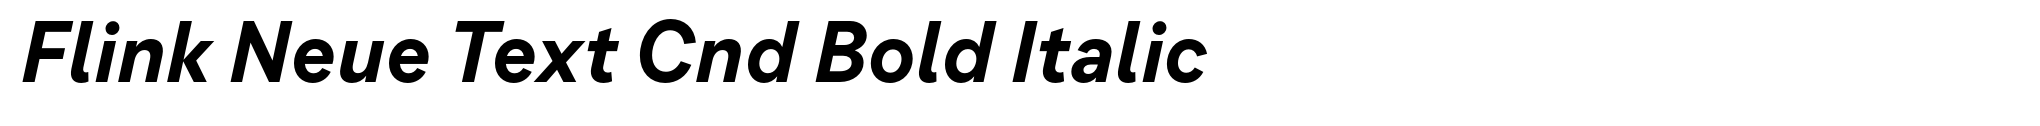 Flink Neue Text Cnd Bold Italic image